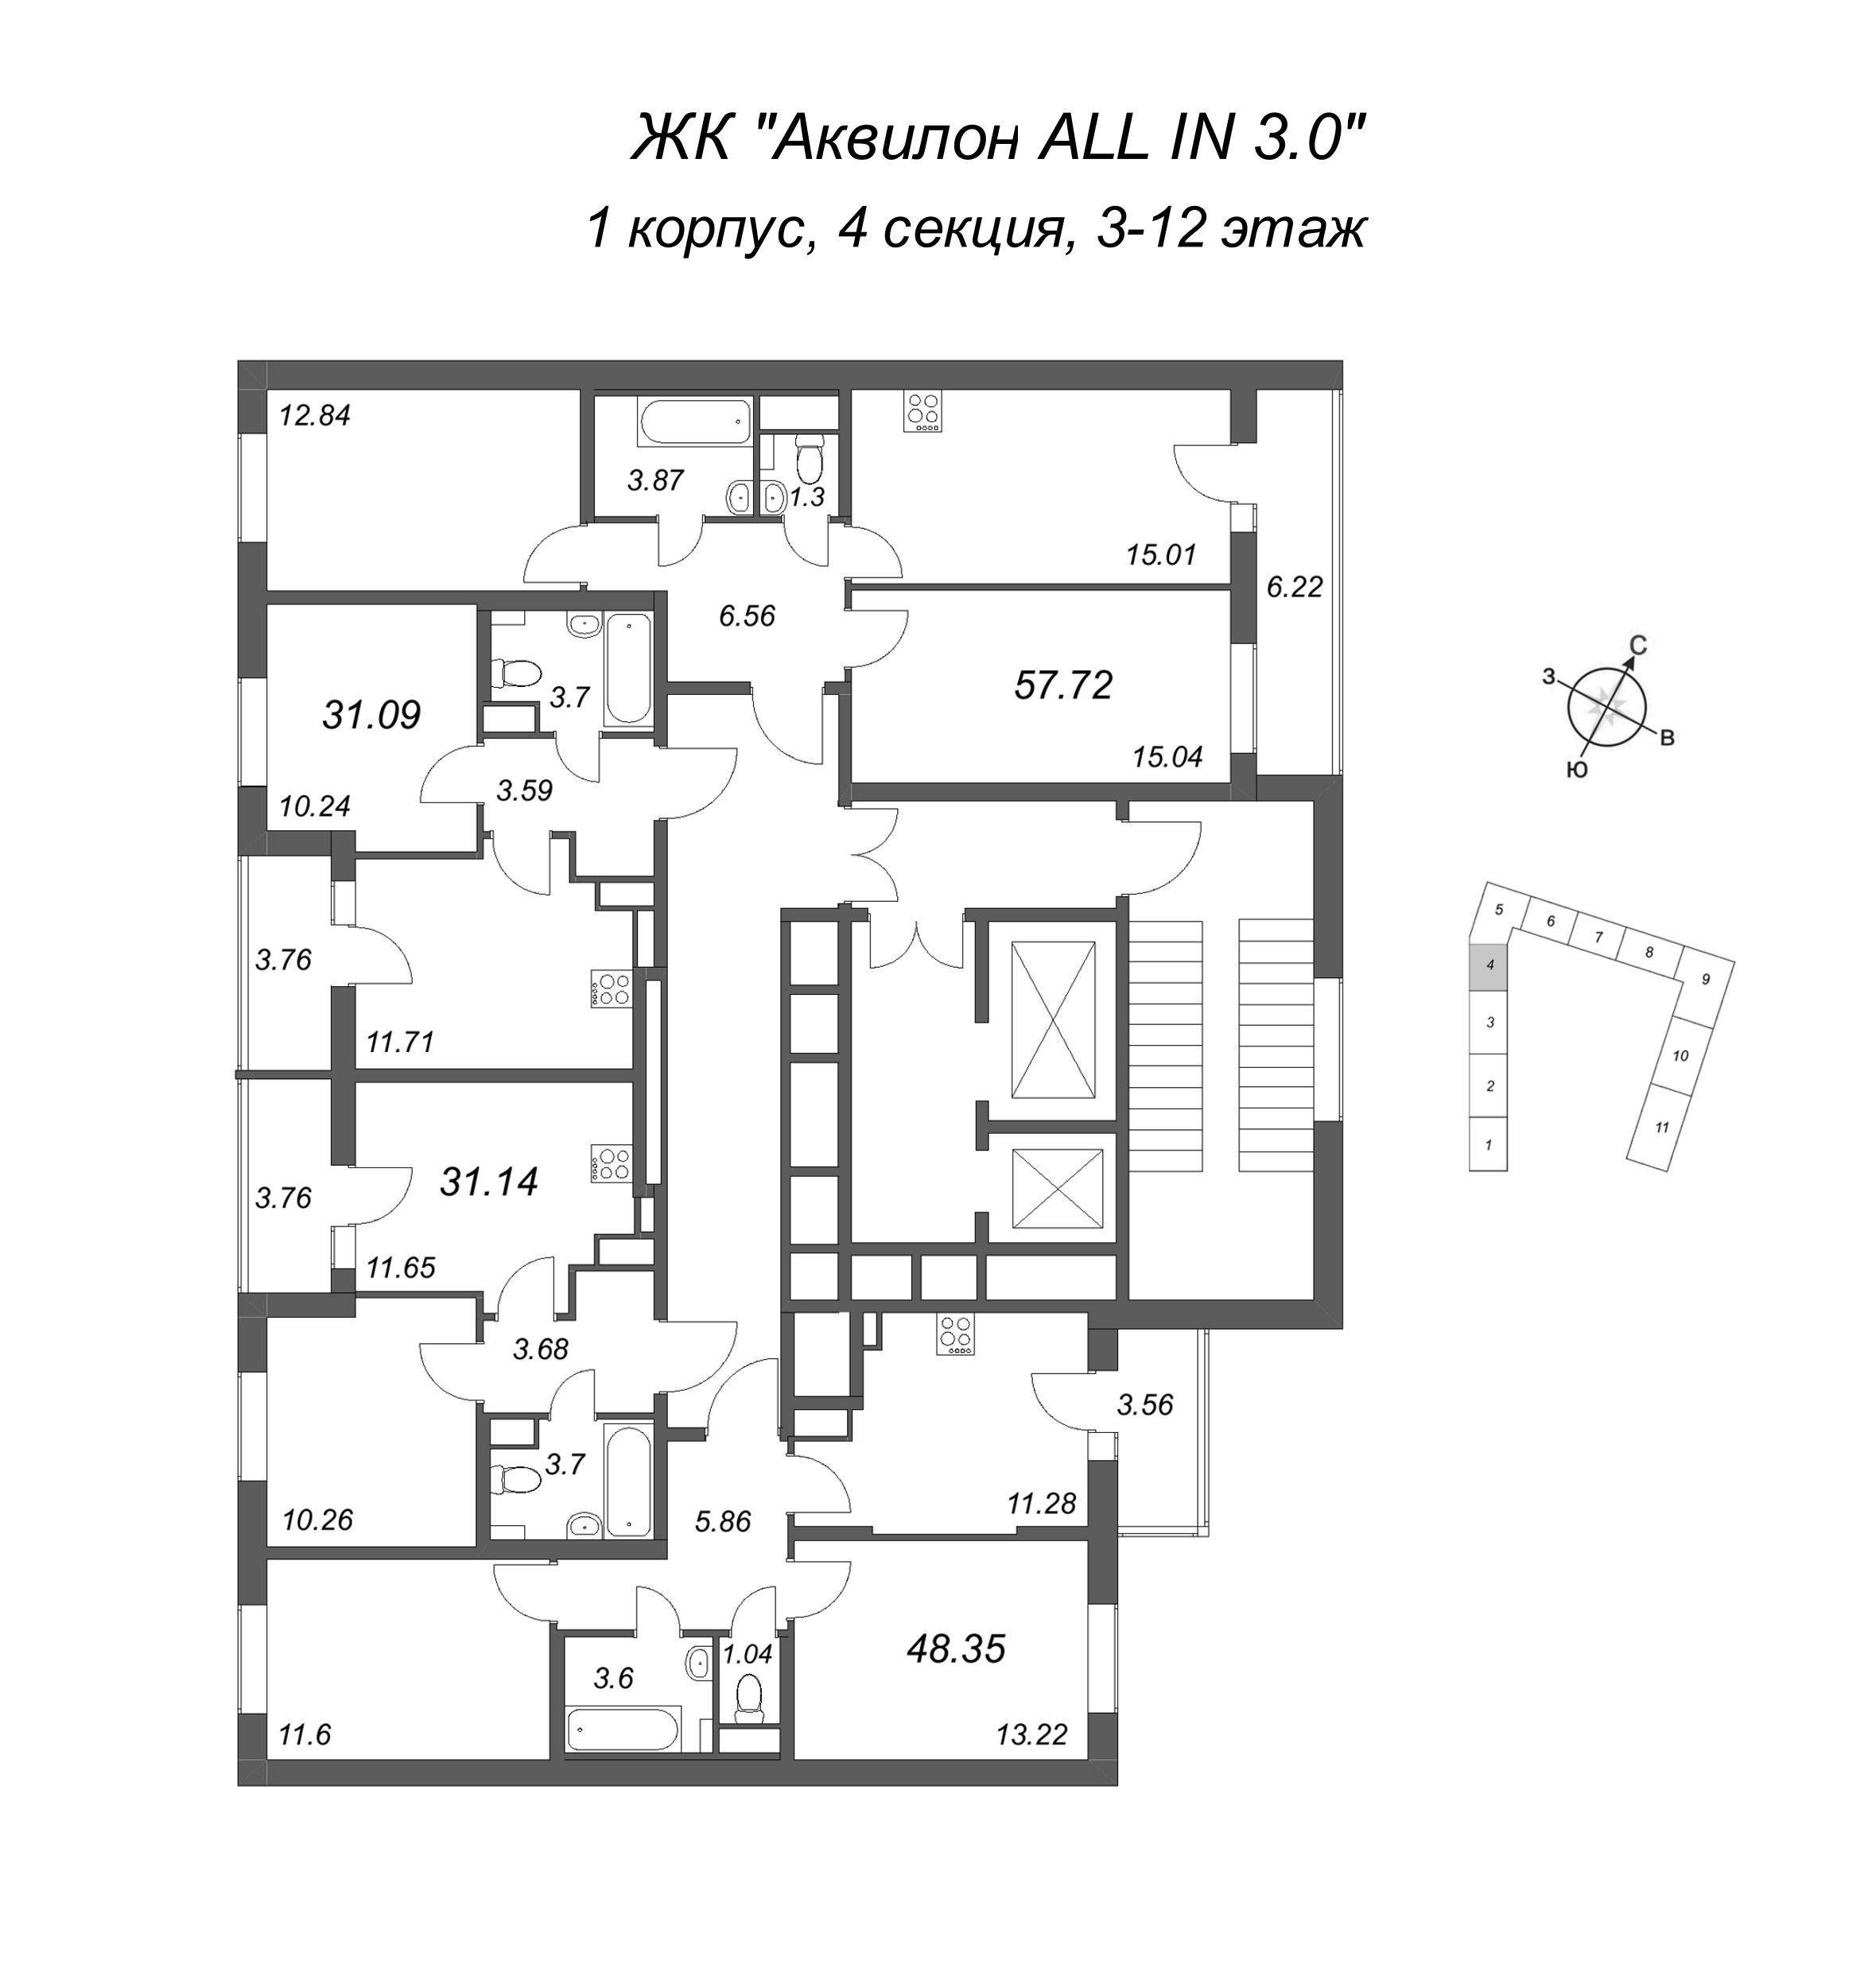 1-комнатная квартира, 31.09 м² в ЖК "Аквилон All in 3.0" - планировка этажа